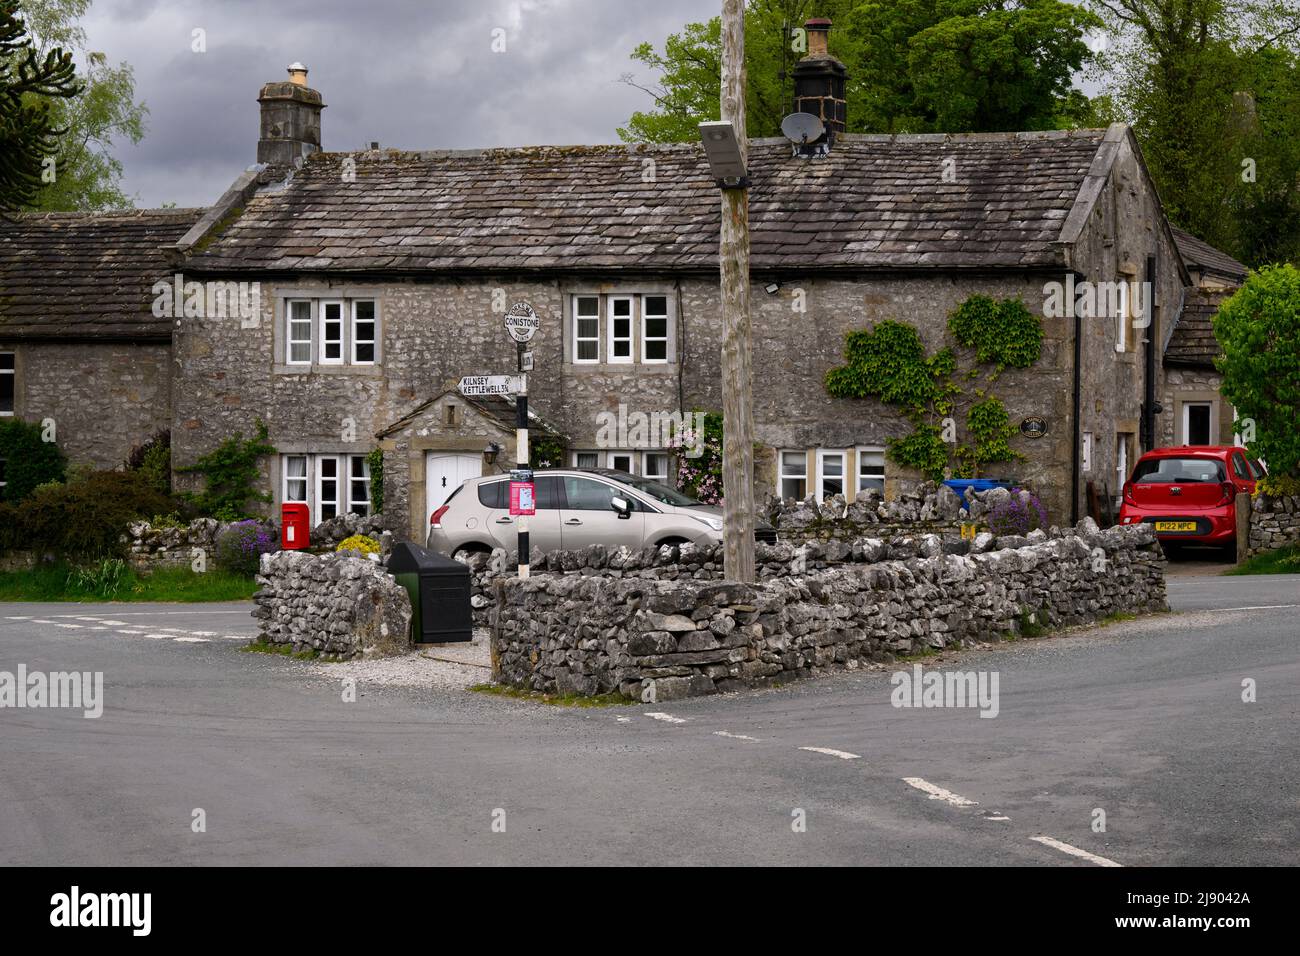 Tranquillo centro villaggio Conistone (attraente C18 proprietà in pietra, incrocio strada murata, indicazione) - Wharfedale, Yorkshire Dales, Inghilterra, Regno Unito. Foto Stock